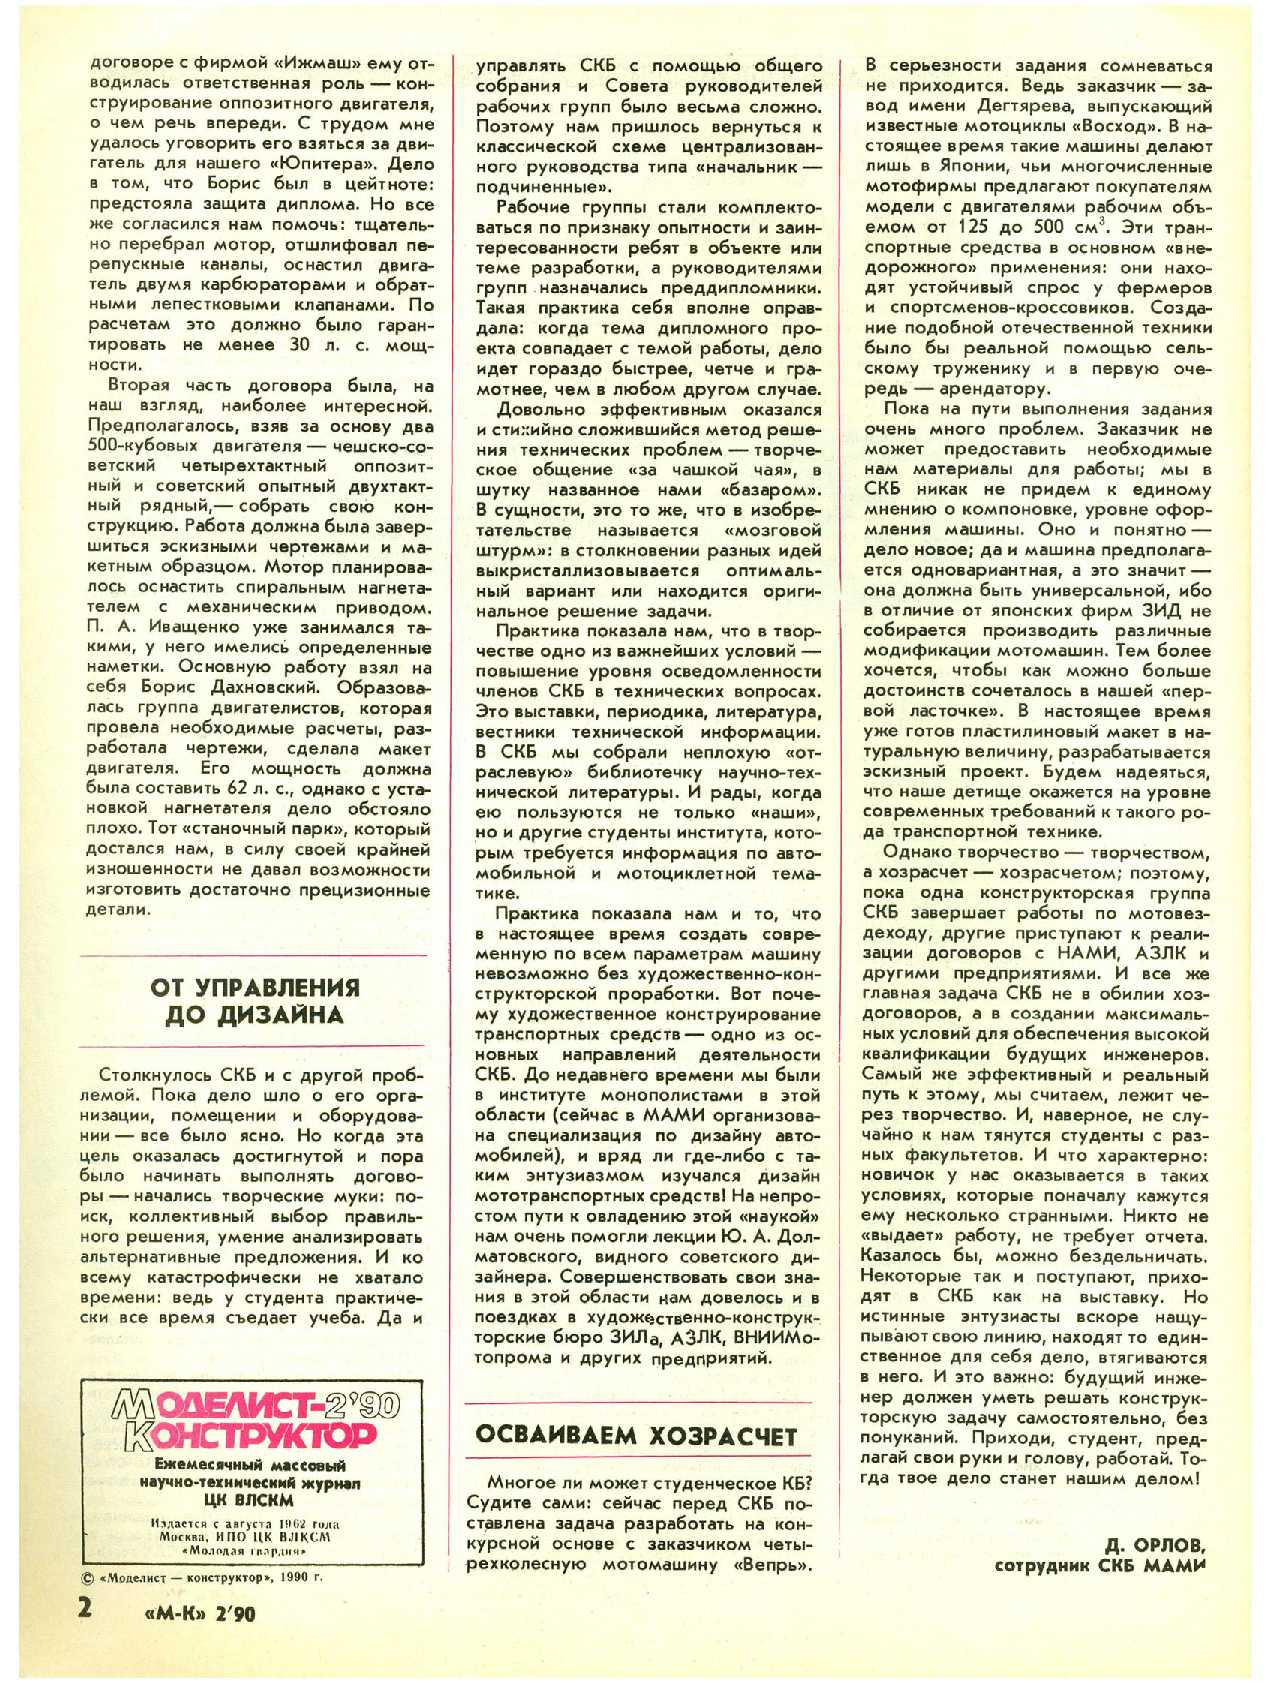 МК 2, 1990, 2 c.